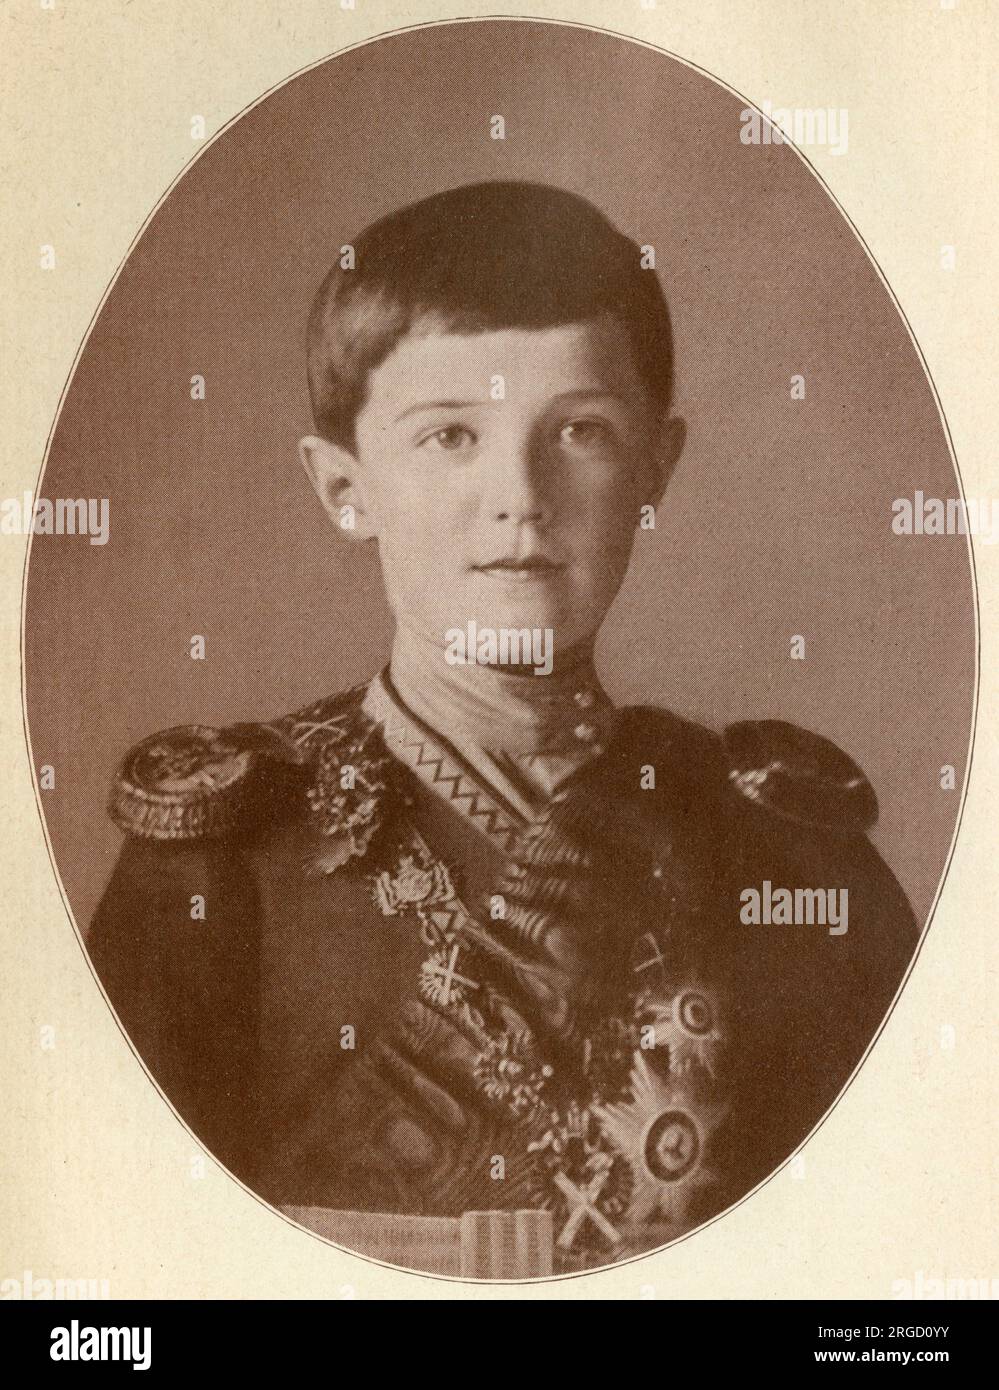 Russland - Alexej Nikolajewitsch (1904-1918), der letzte Zarewitsch (Thronerbe des russischen Reiches). Stockfoto